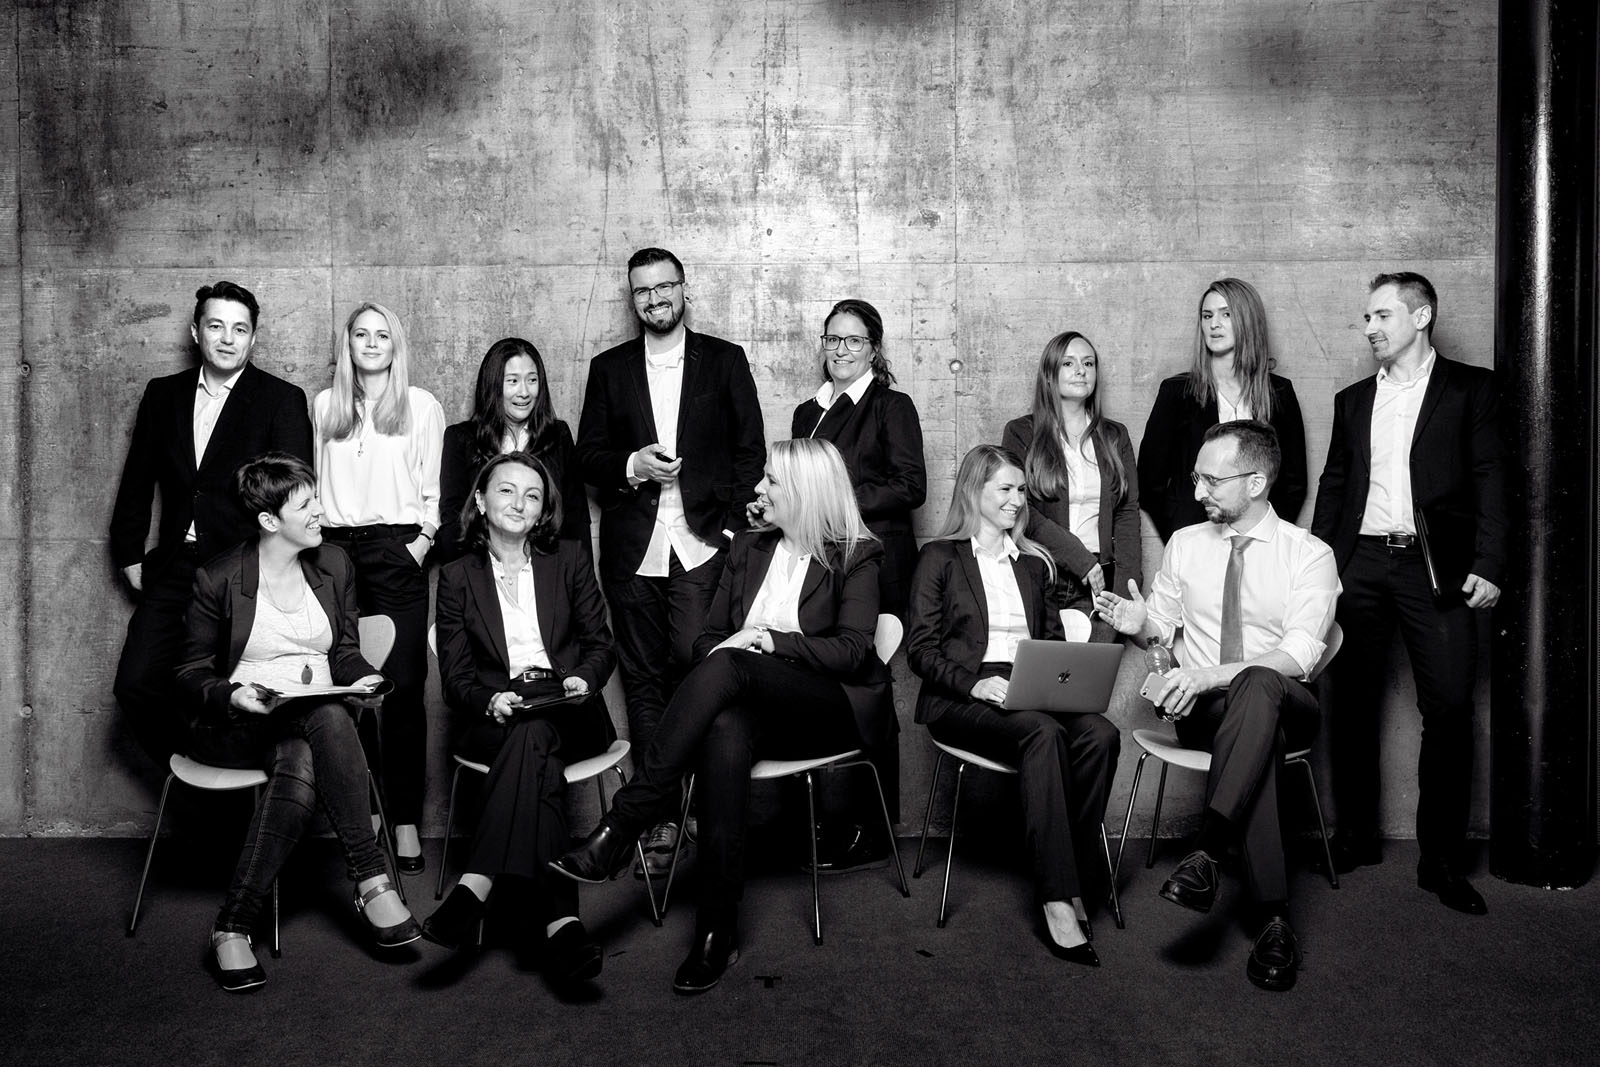 Corporate Fotografie: Business & Editorial Portraits, hier Gruppen-Portrait der Hochschul-Geschäftsführung - schwarz-weiss Aufahme © Portraitfotograf Christian O. Bruch Hamburg